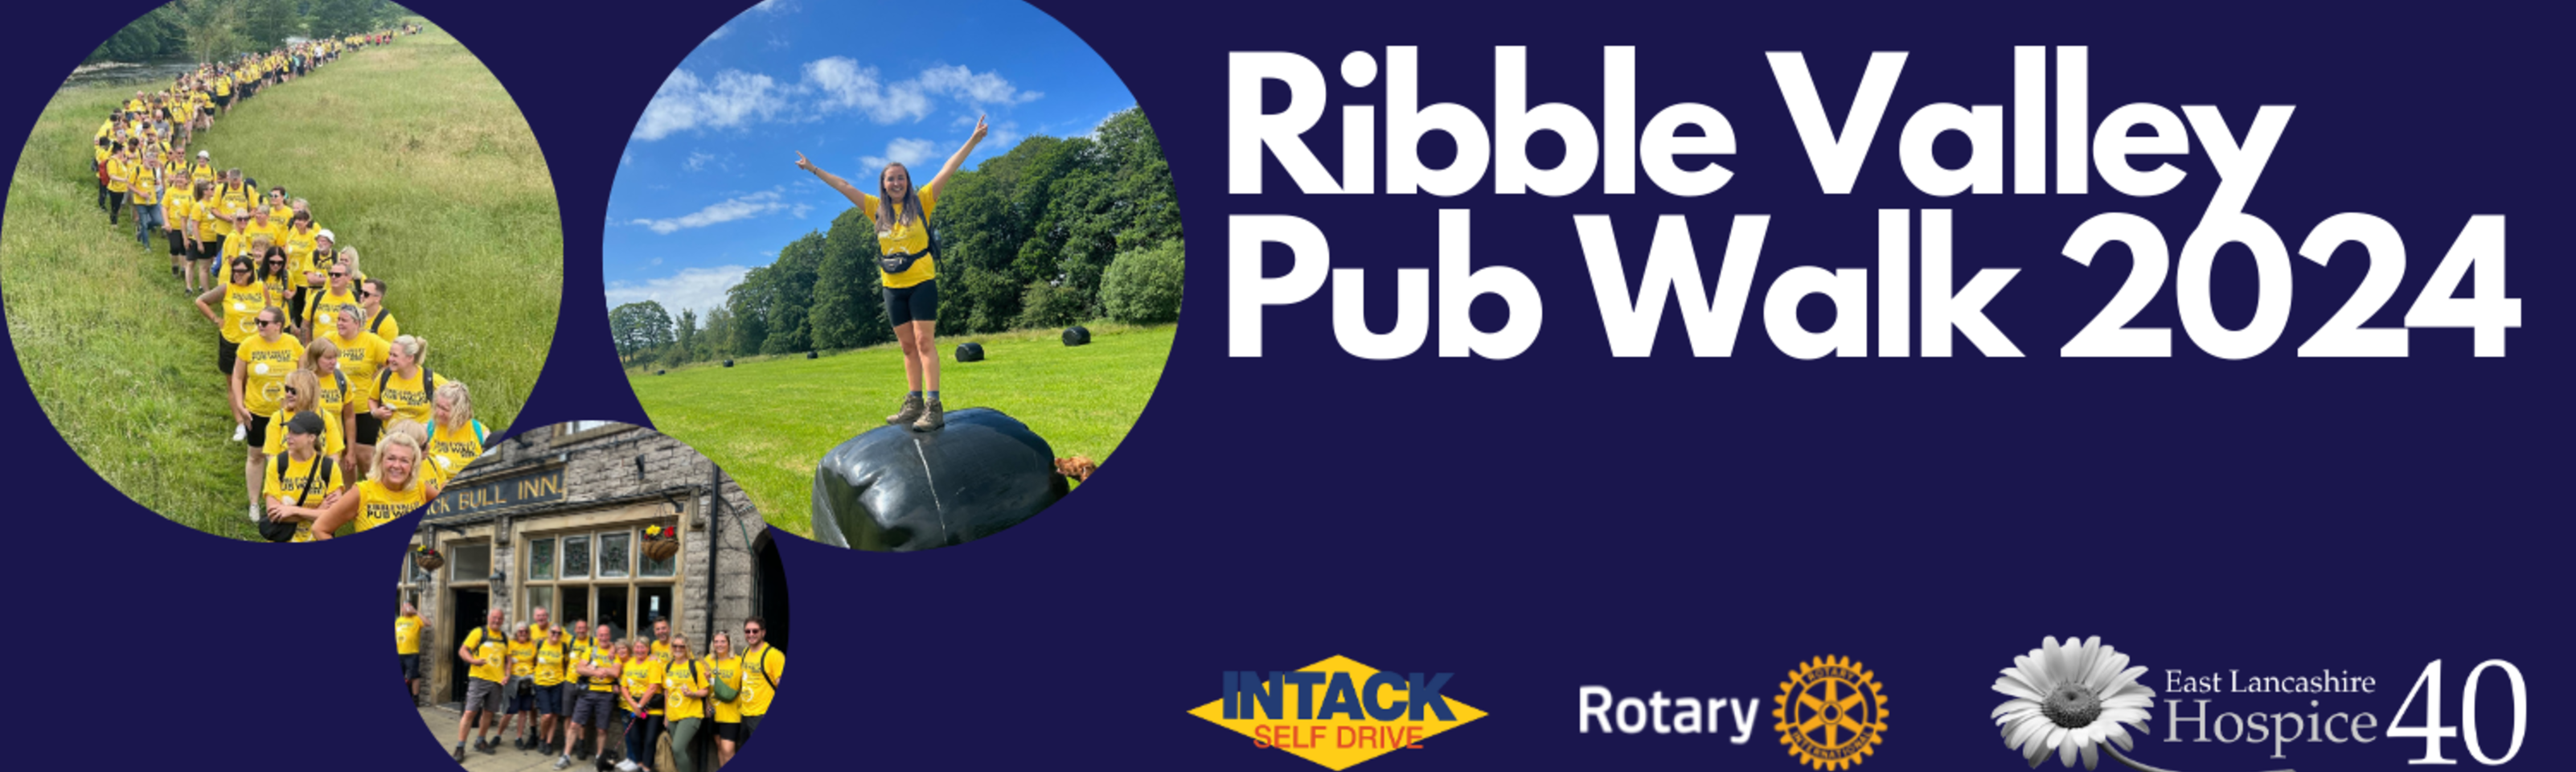 Ribble Valley Pub Walk